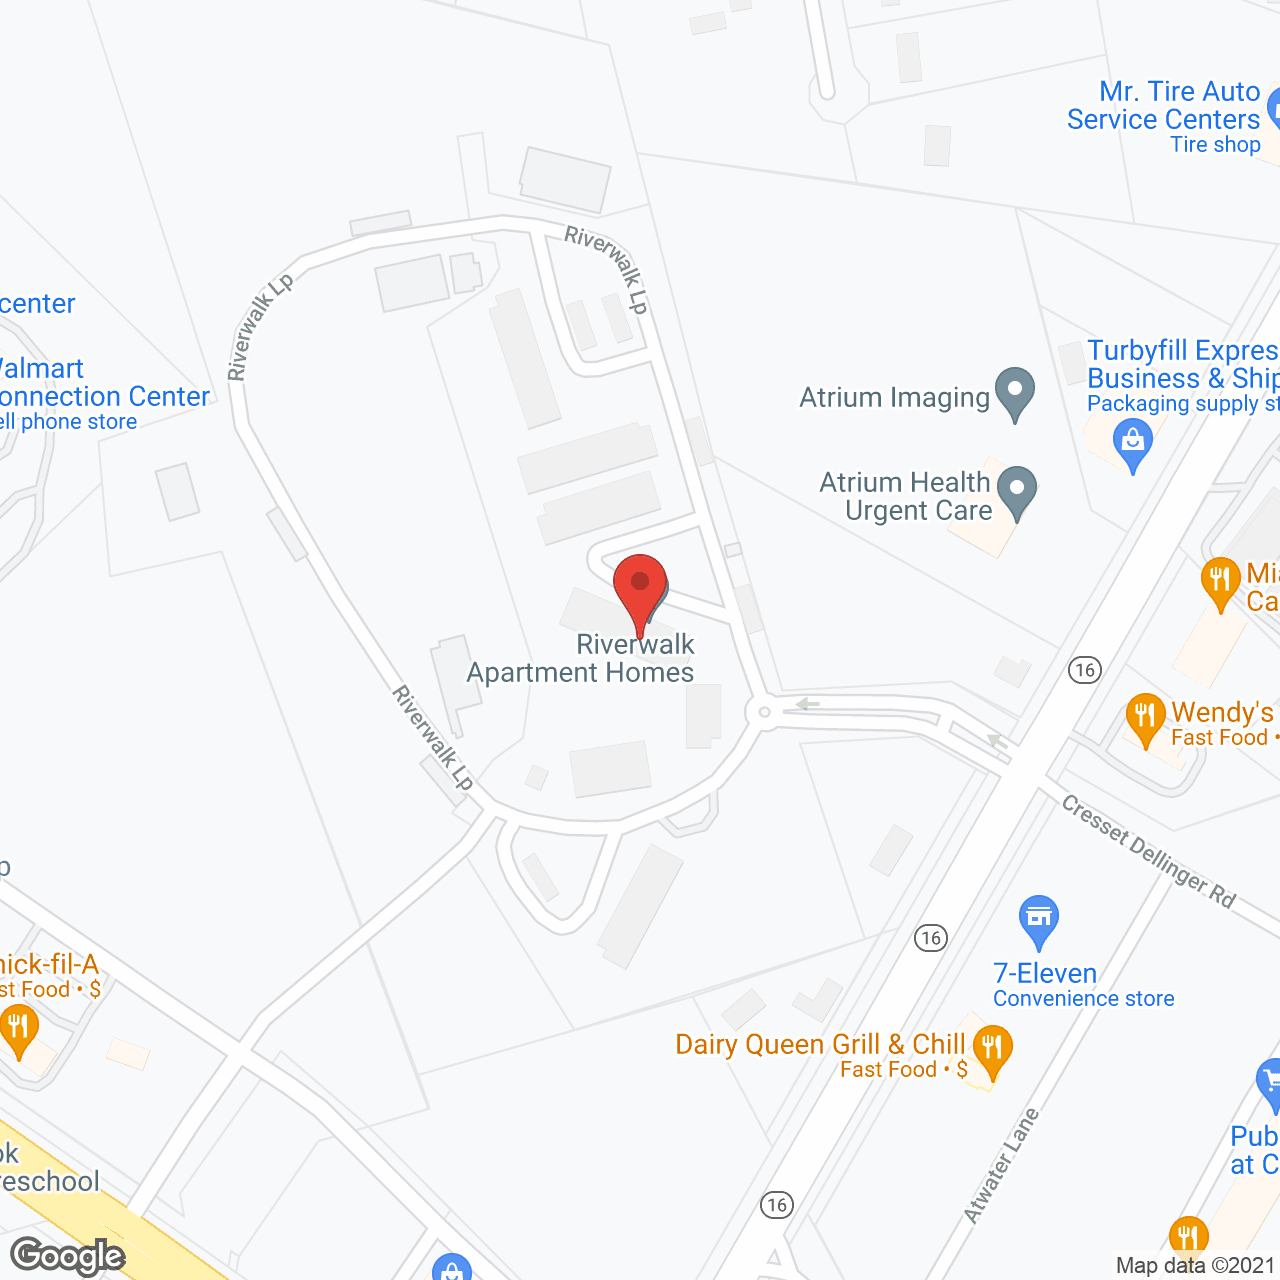 Riverwalk Apartments in google map